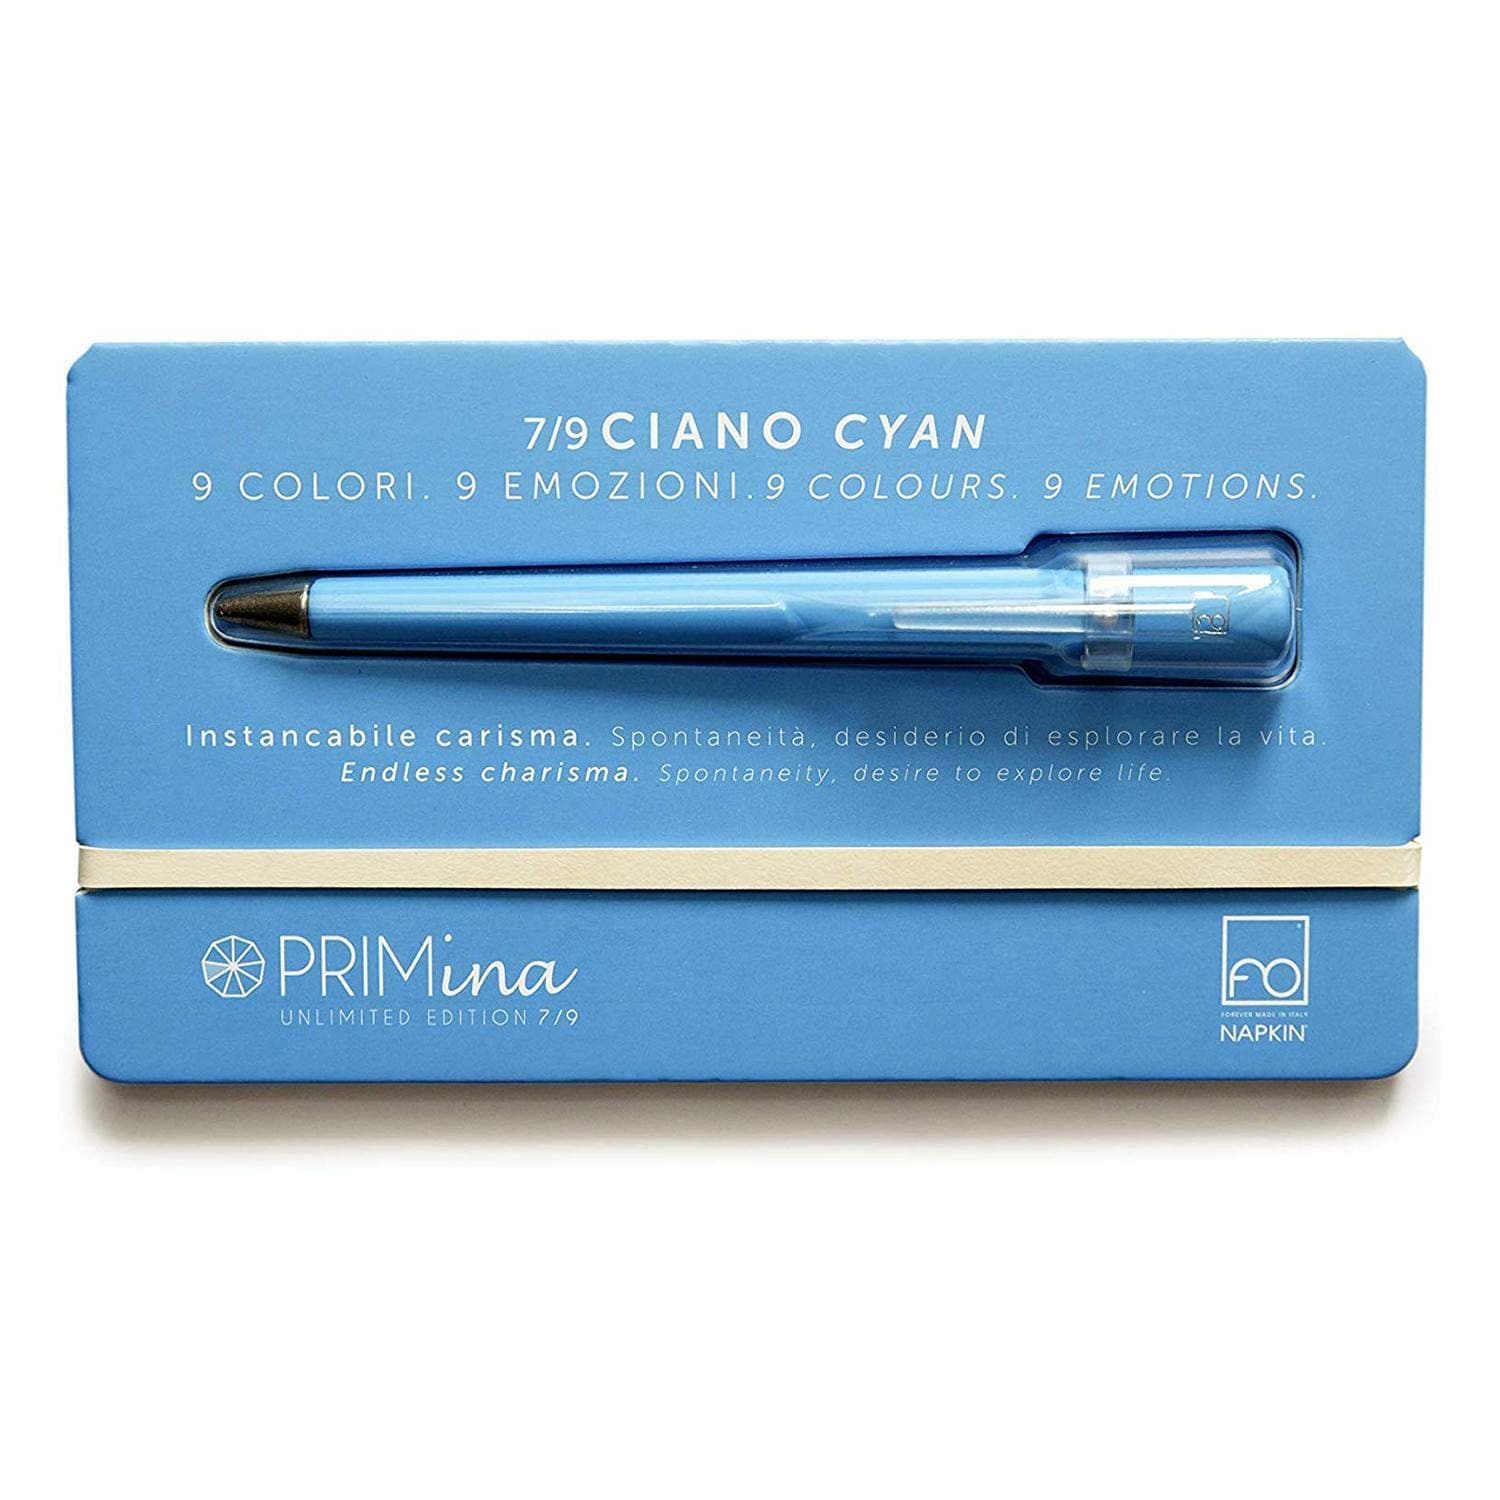 Pininfarina Forever Primina Ciano Inkless Pen - NPKRE01553 - Jashanmal Home